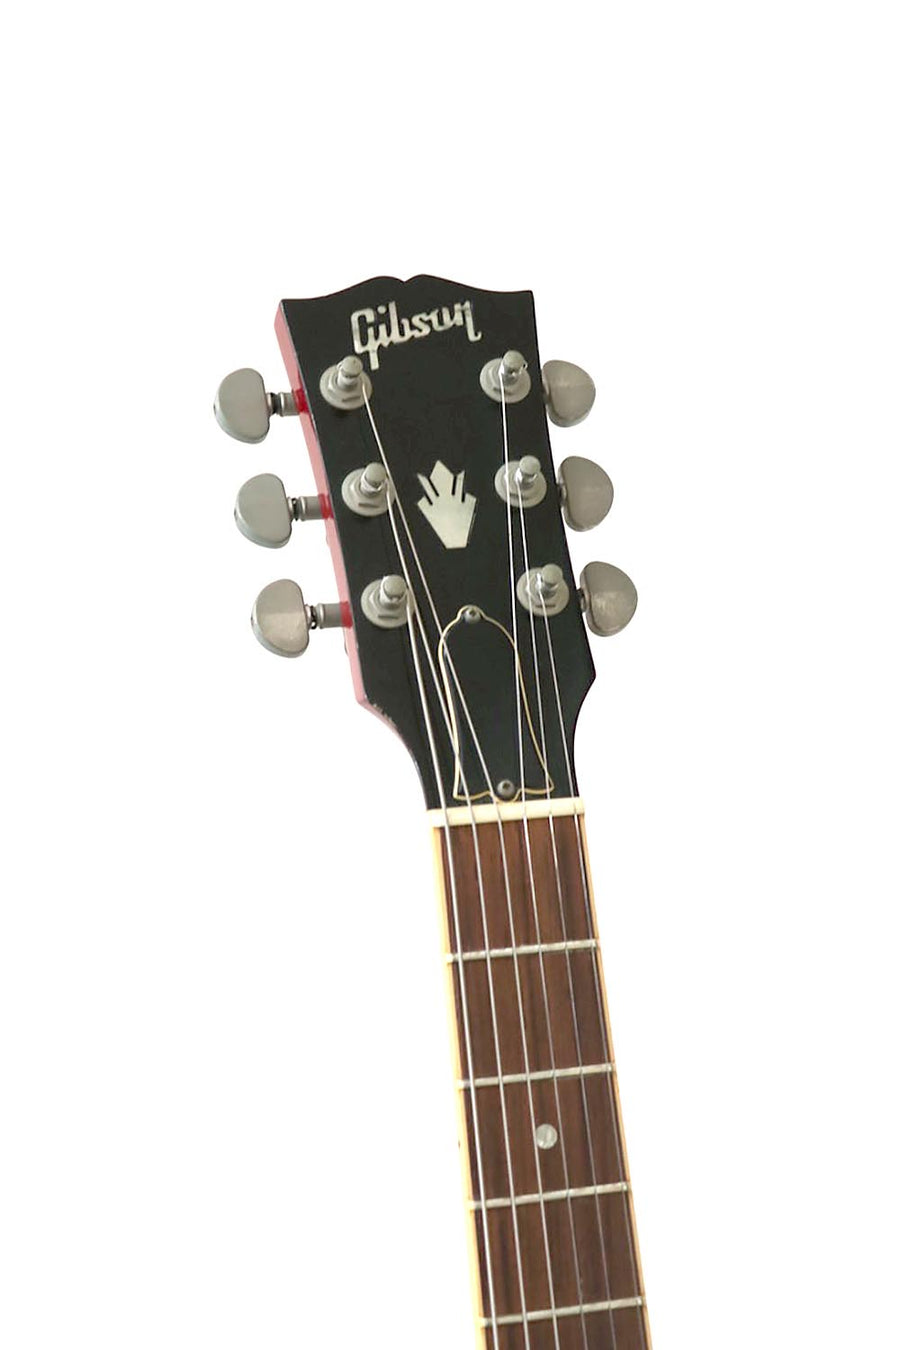 Gibson ES335 Cherry 2001